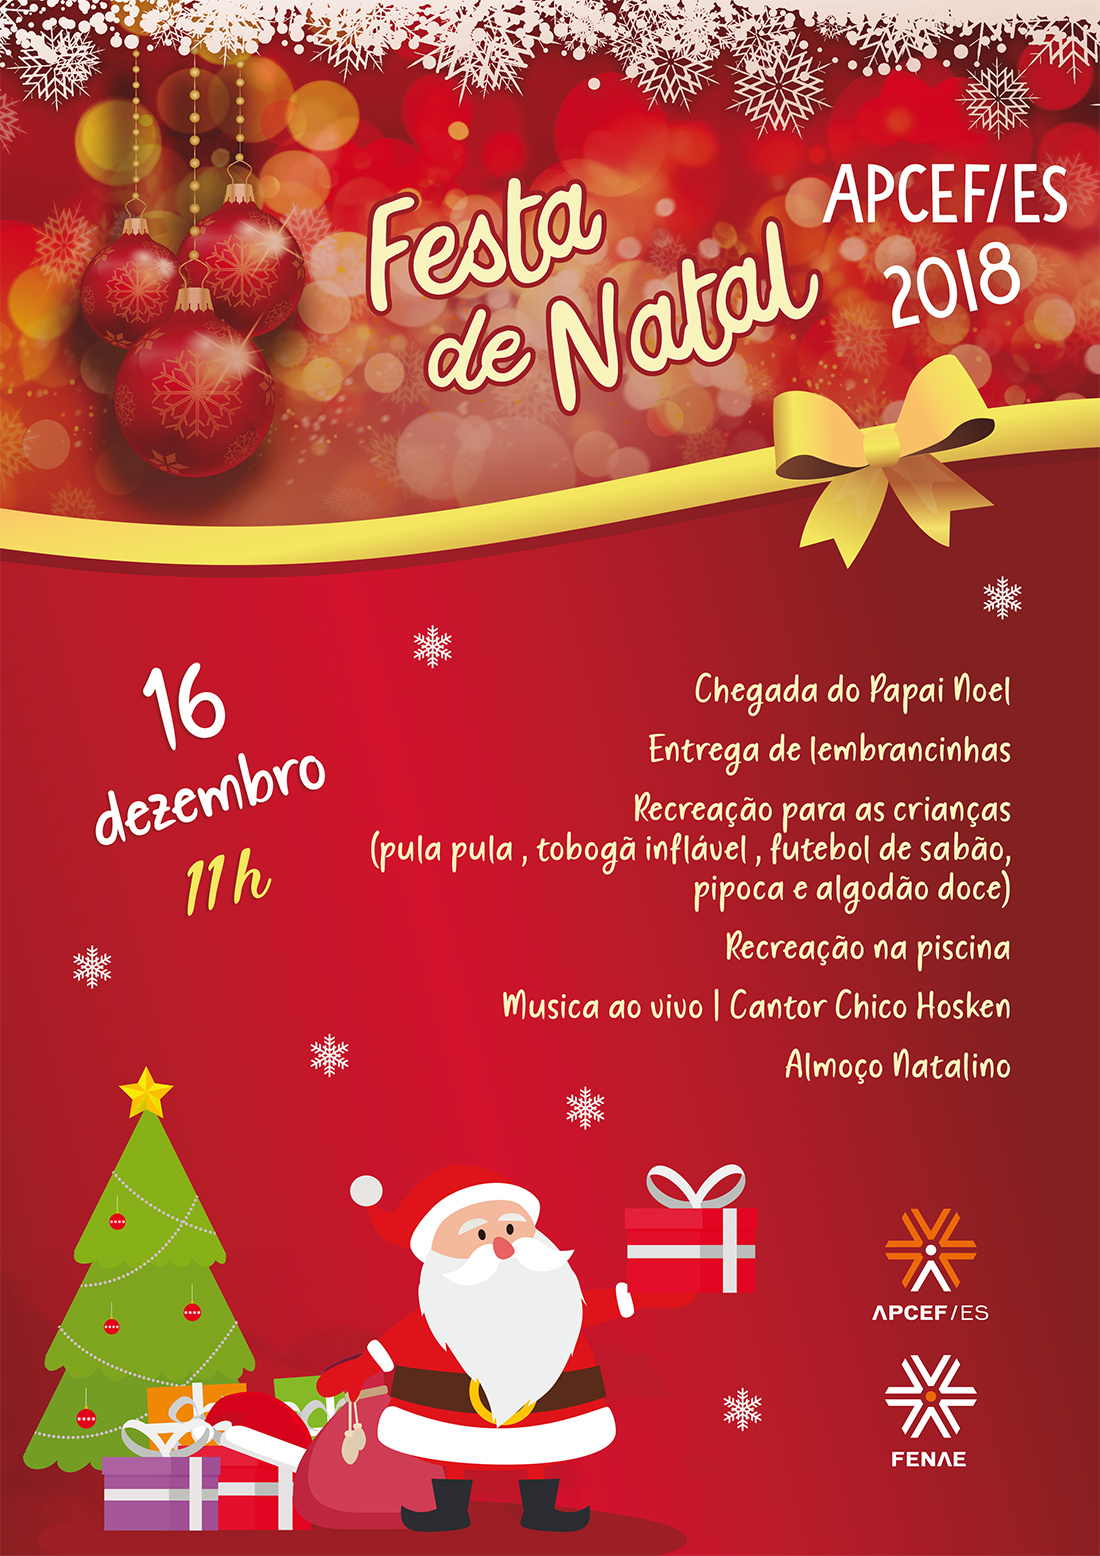 Festa de Natal 2018 | Apcef/ES Portal